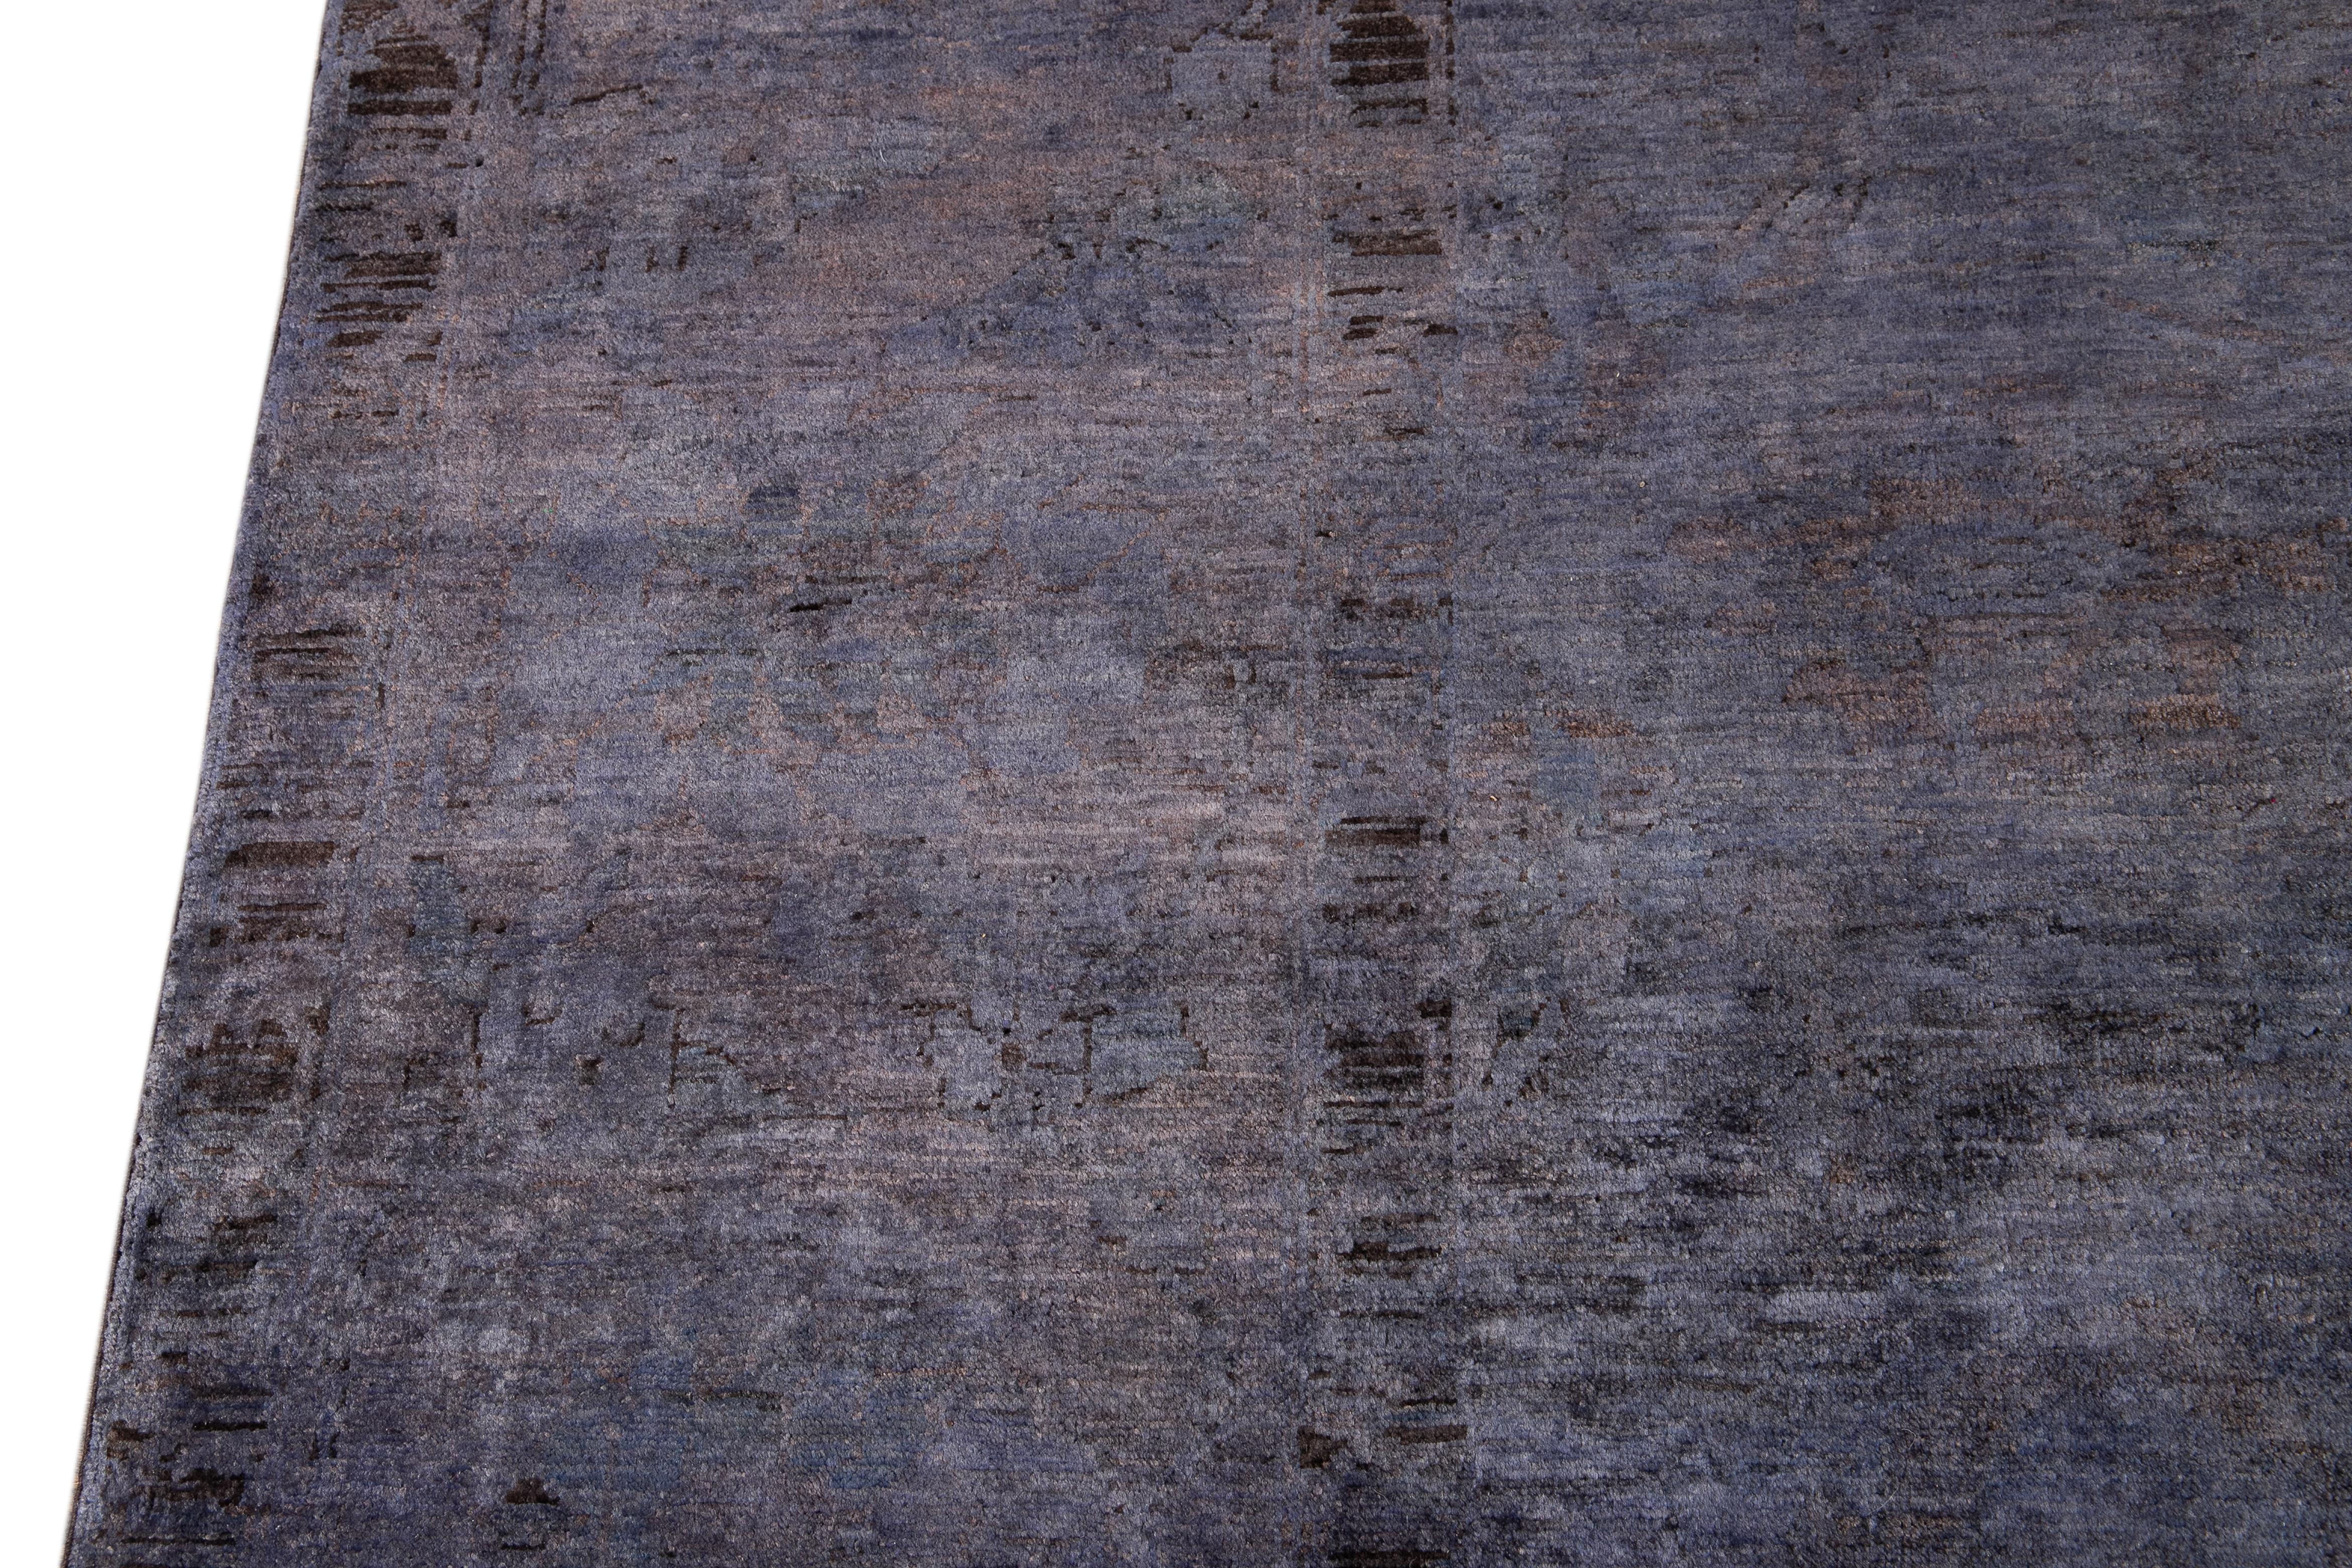 Dieser exquisite, moderne, gefärbte Teppich besteht aus handgeknüpfter Wolle mit einem üppigen violetten Feld und zarten schwarzen Akzenten, die in einem zeitlosen klassischen Motiv angeordnet sind. Dieses etwa 2019 entstandene Stück ist ein